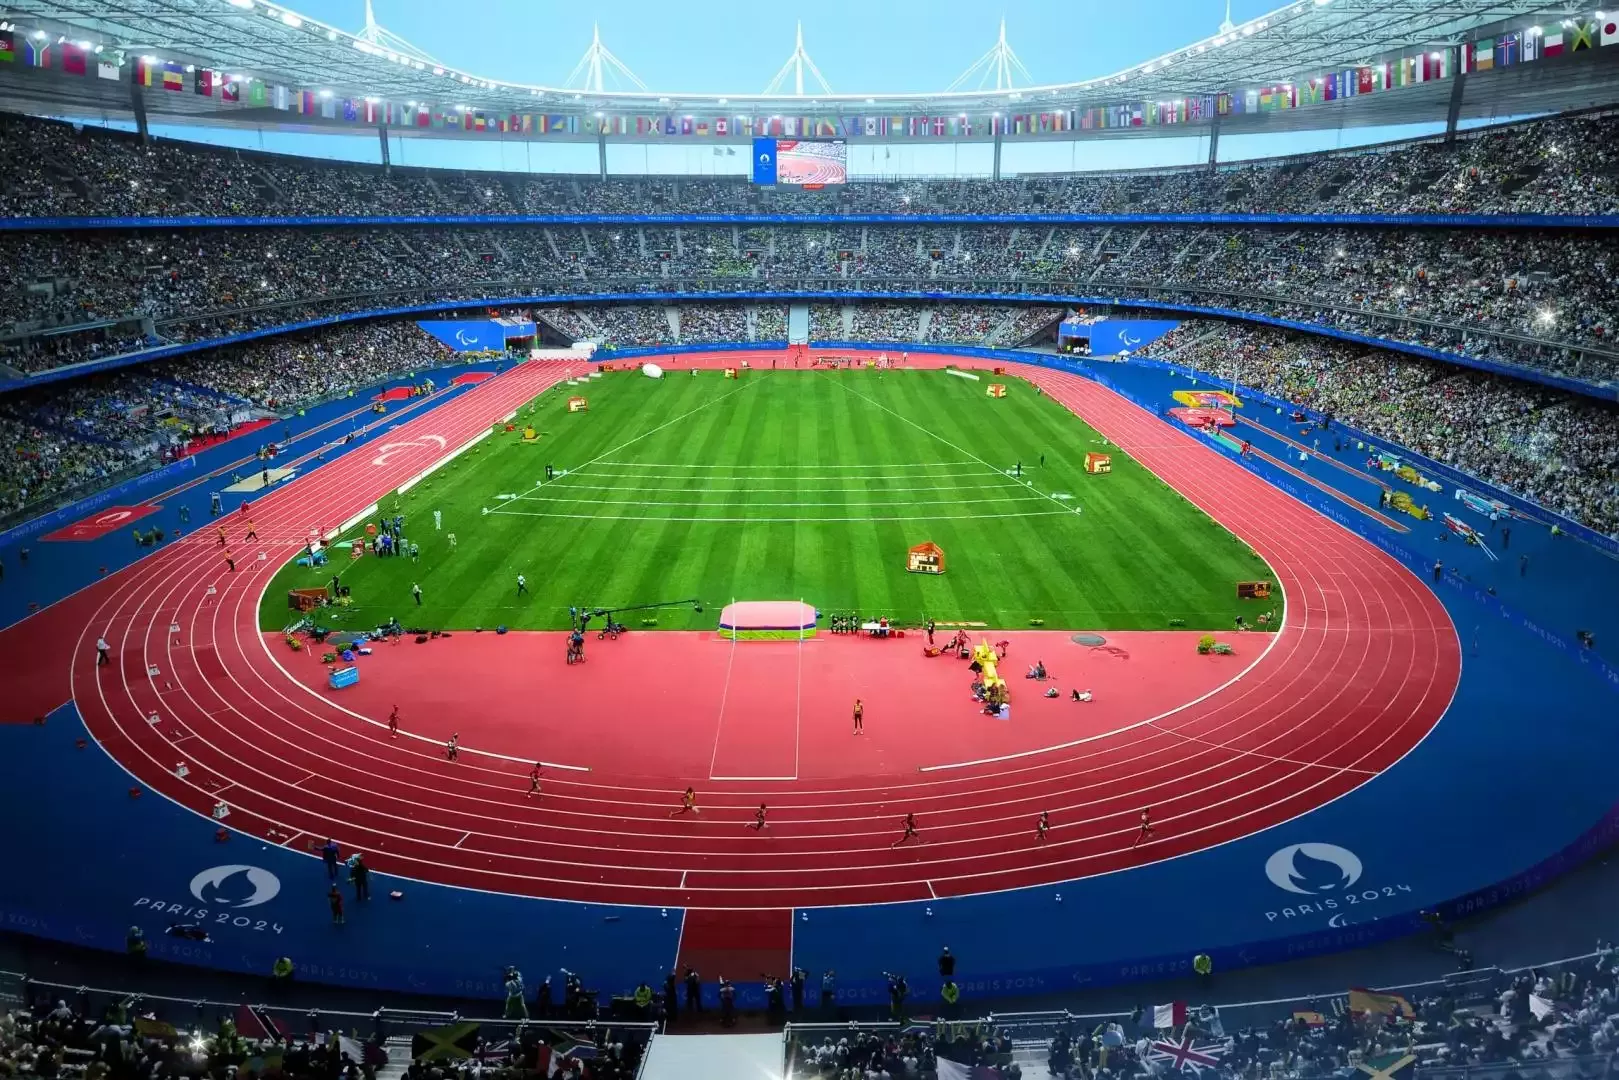 Stade de France Stadium sediou a final da Copa do Mundo de 1998